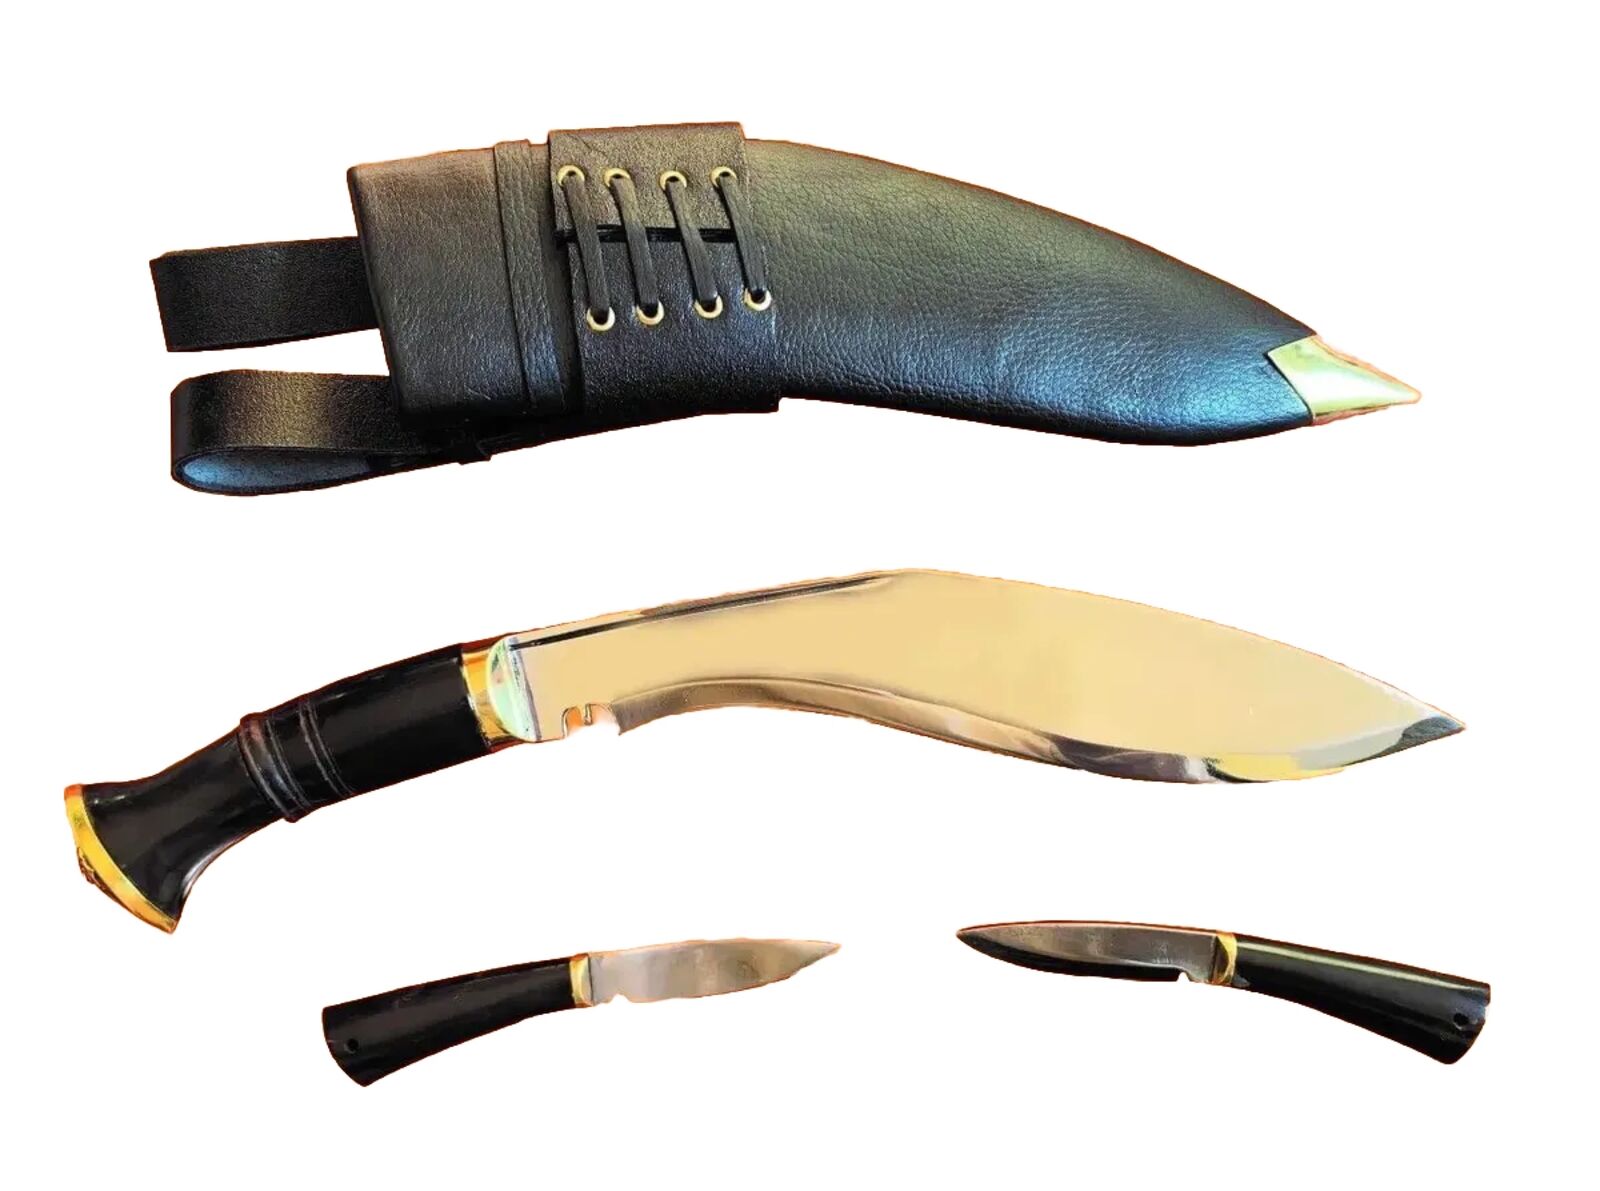 MK5 - British Army Issued Kukri (Nepalese knife)